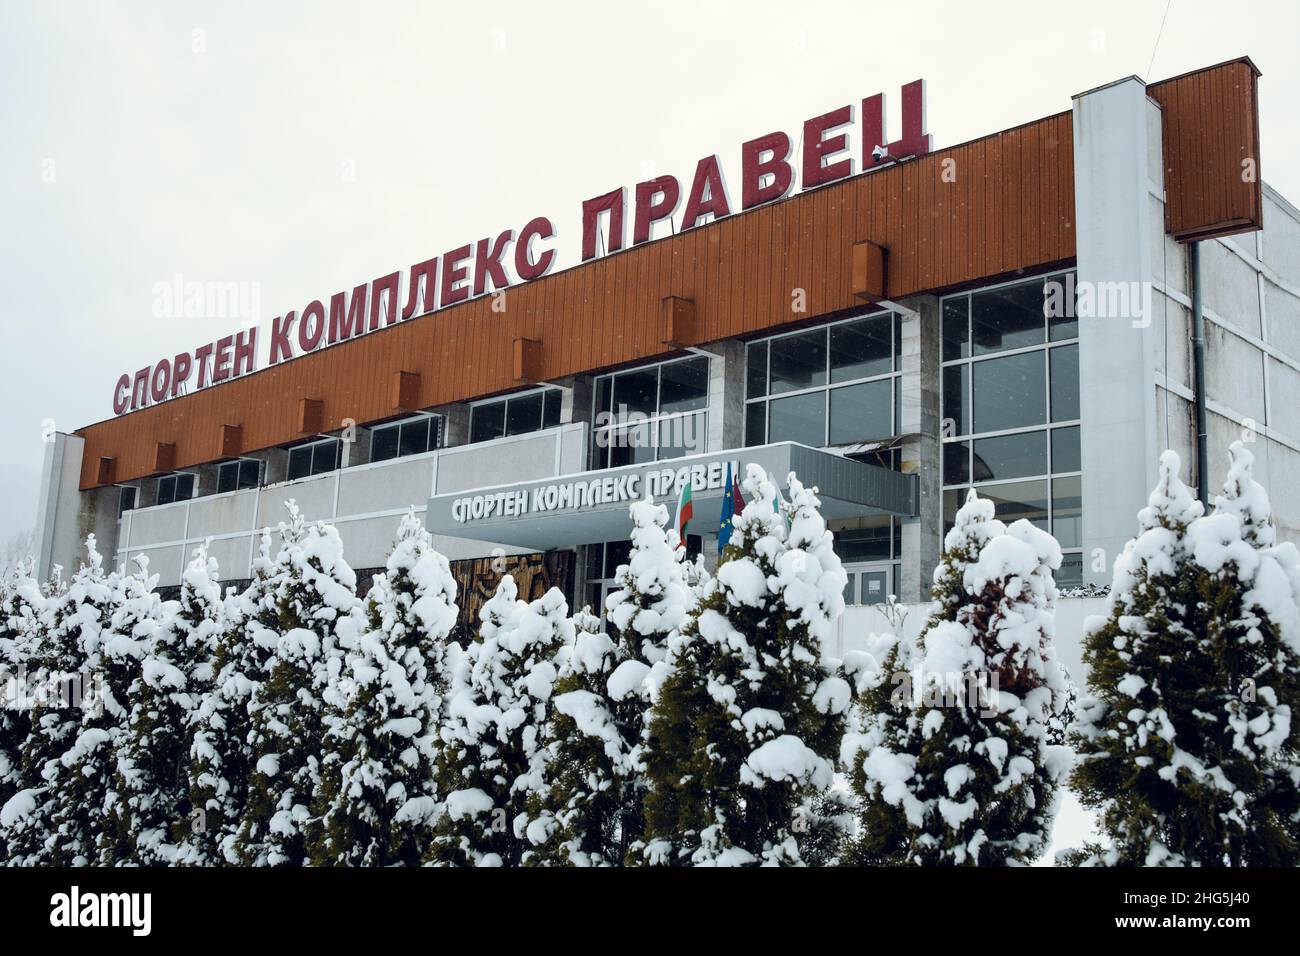 Um 2020: Der Sportkomplex von Pravets, Bulgarien. Der Komplex befindet sich im Stadtzentrum. Schnee bedeckt den Boden. Hochwertige Fotos Stockfoto